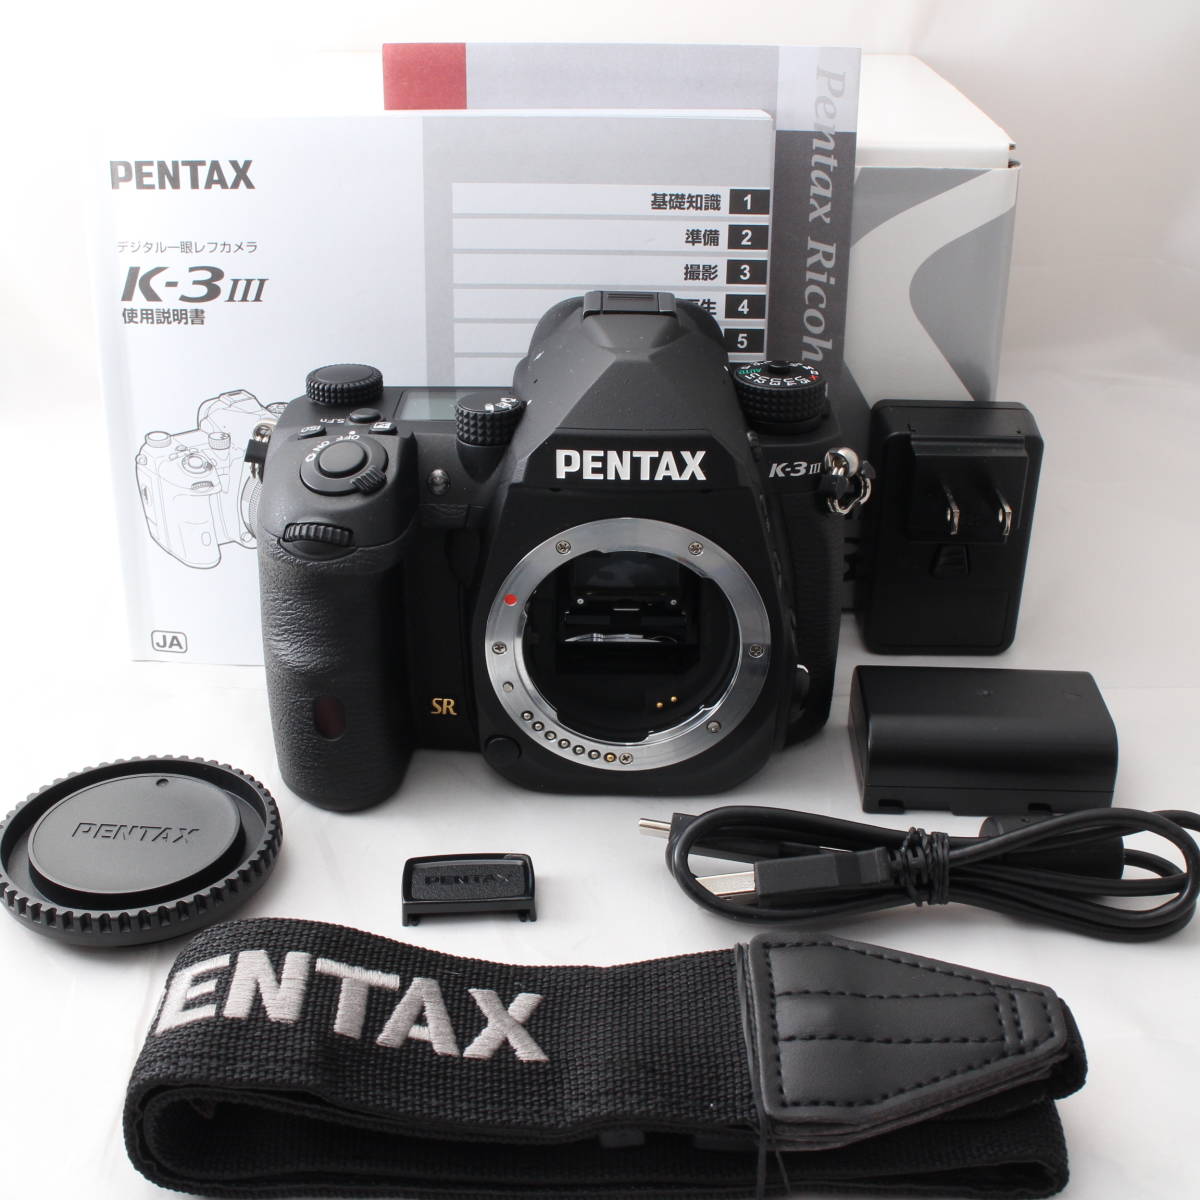 ☆美品・ショット数5921☆ PENTAX K-3 Mark III ボディ ブラック APS-Cデジタル一眼レフカメラ 1053 ペンタックス #R111